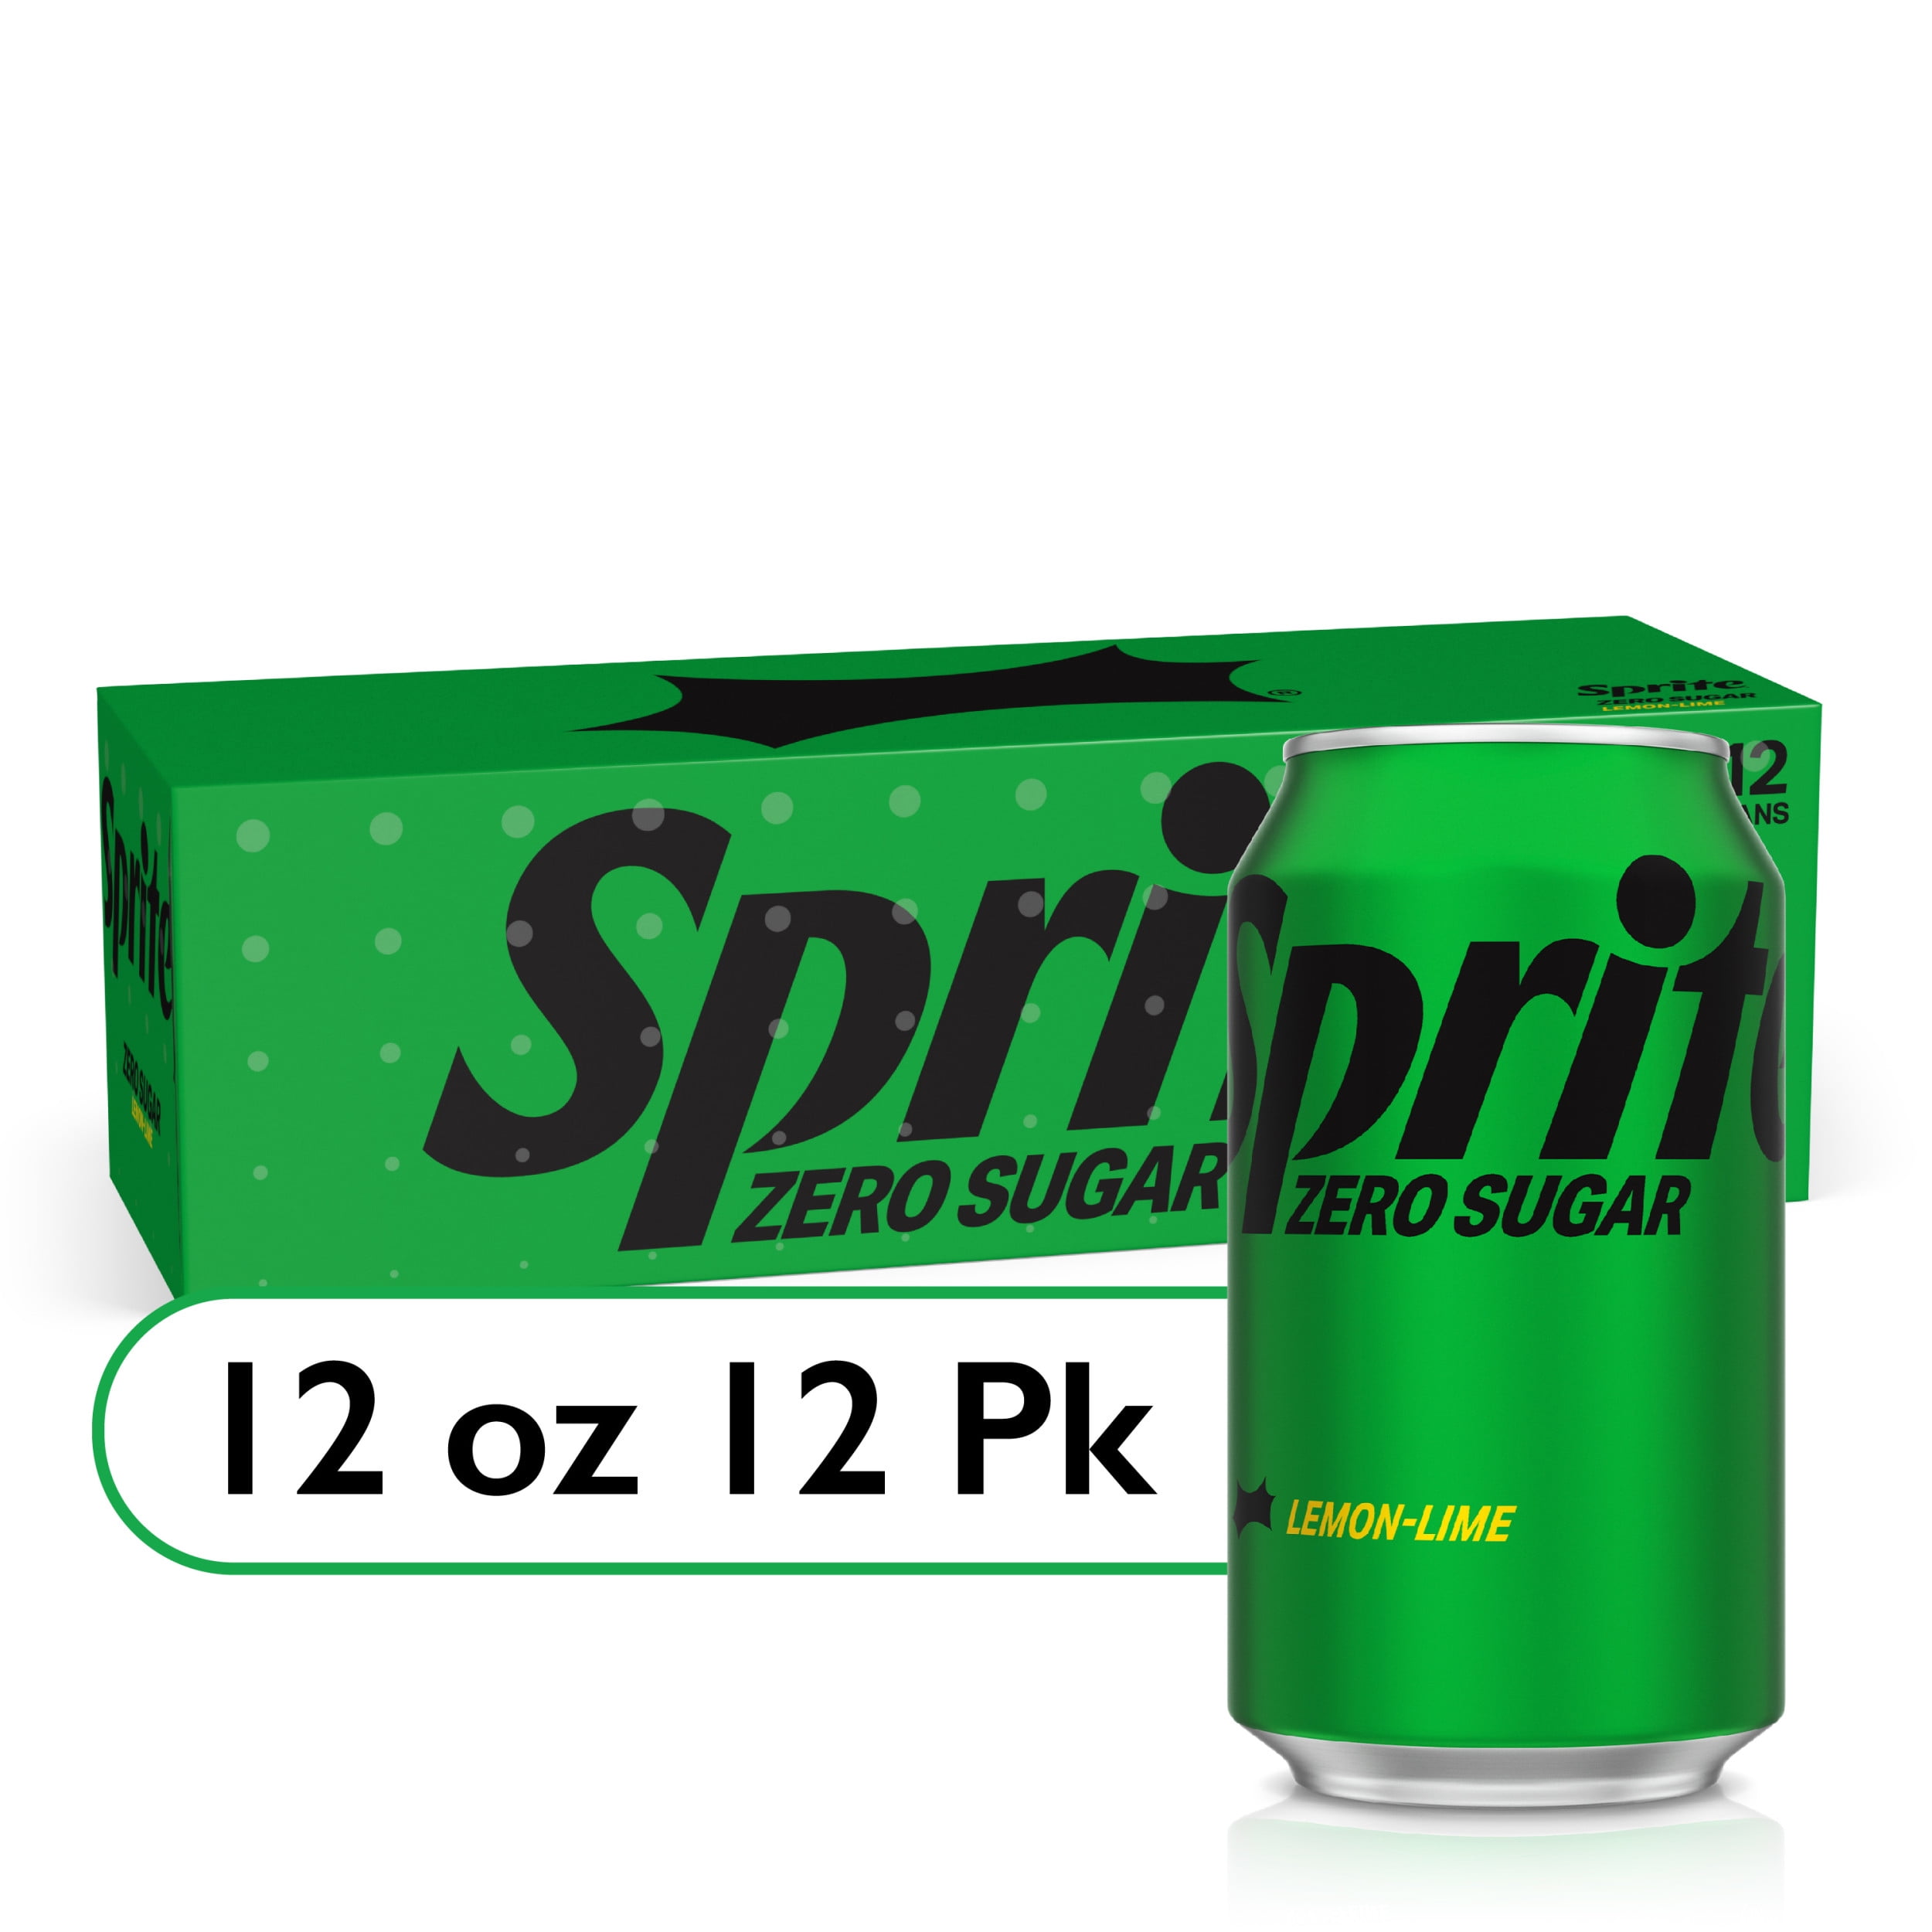 Sprite Zero Sugar Cans, 7.5 fl oz, 6 Pack